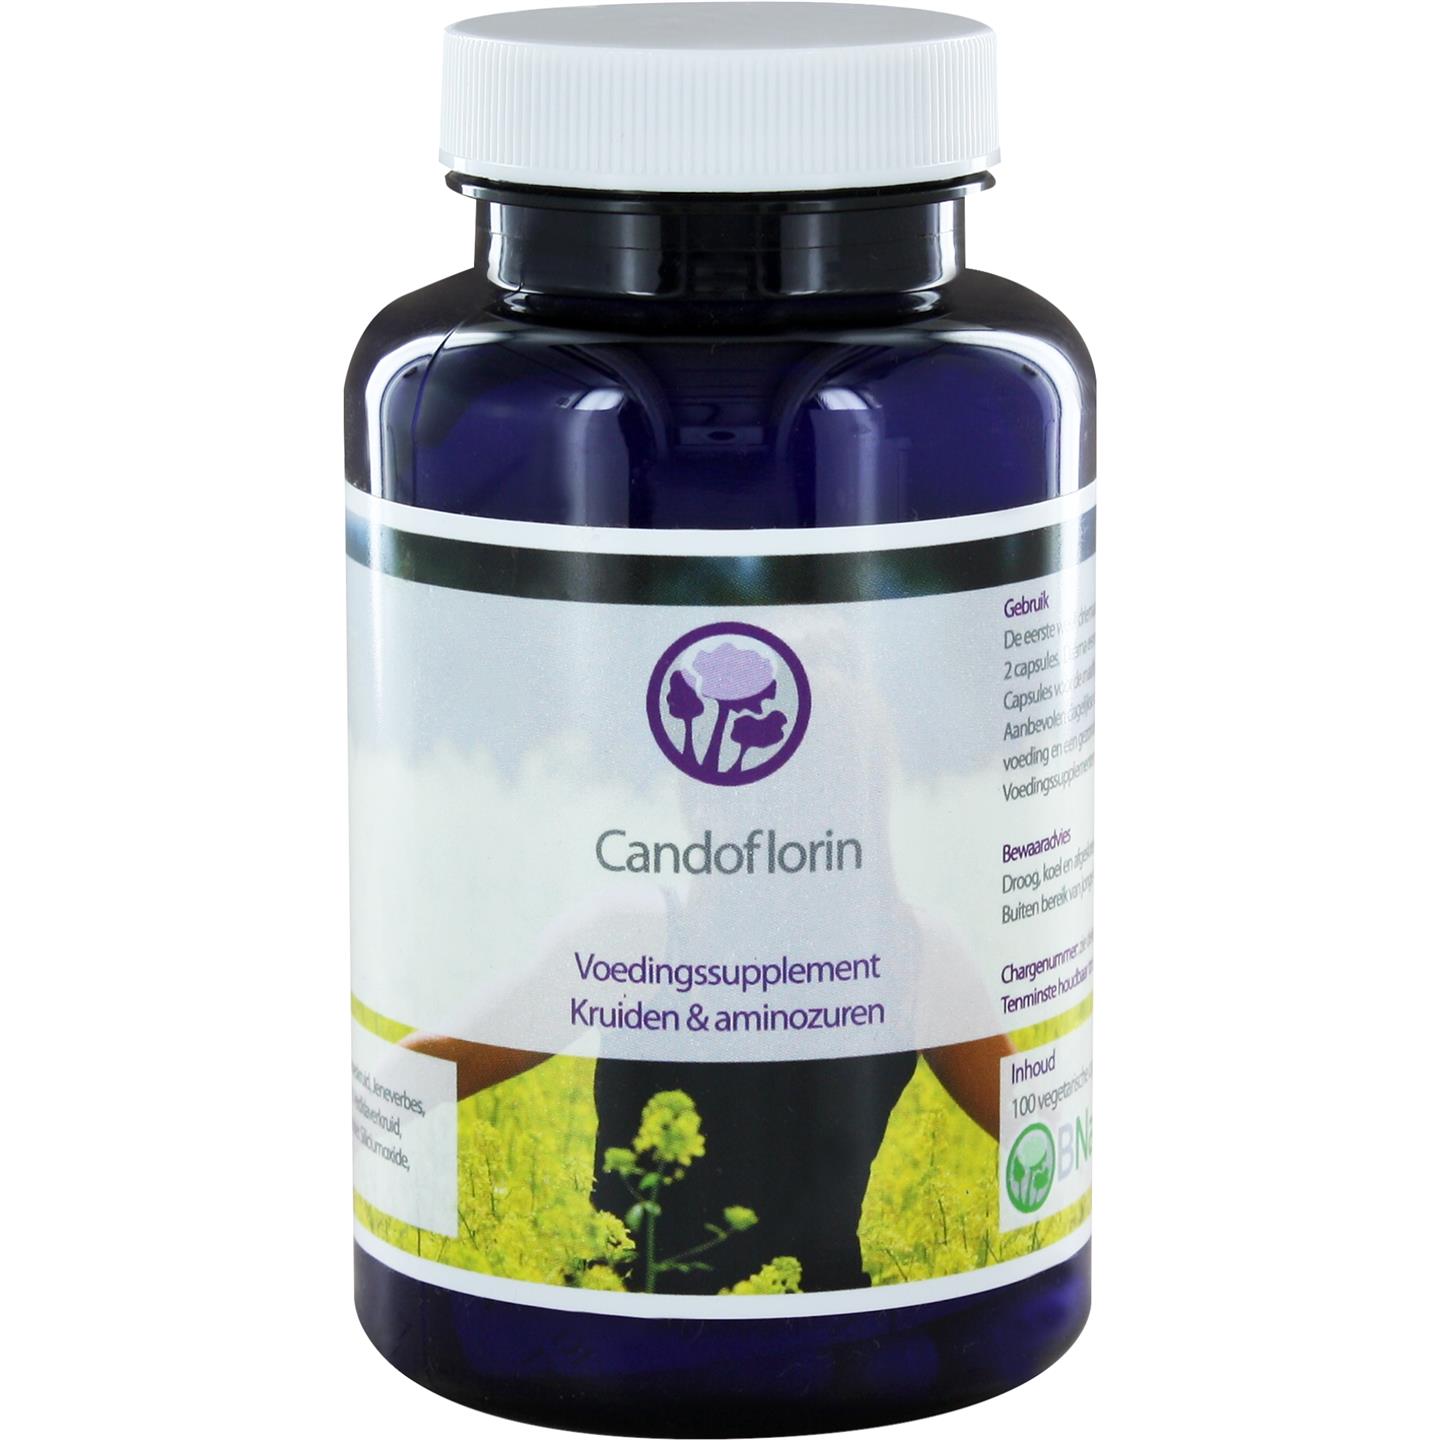 Candoflorin